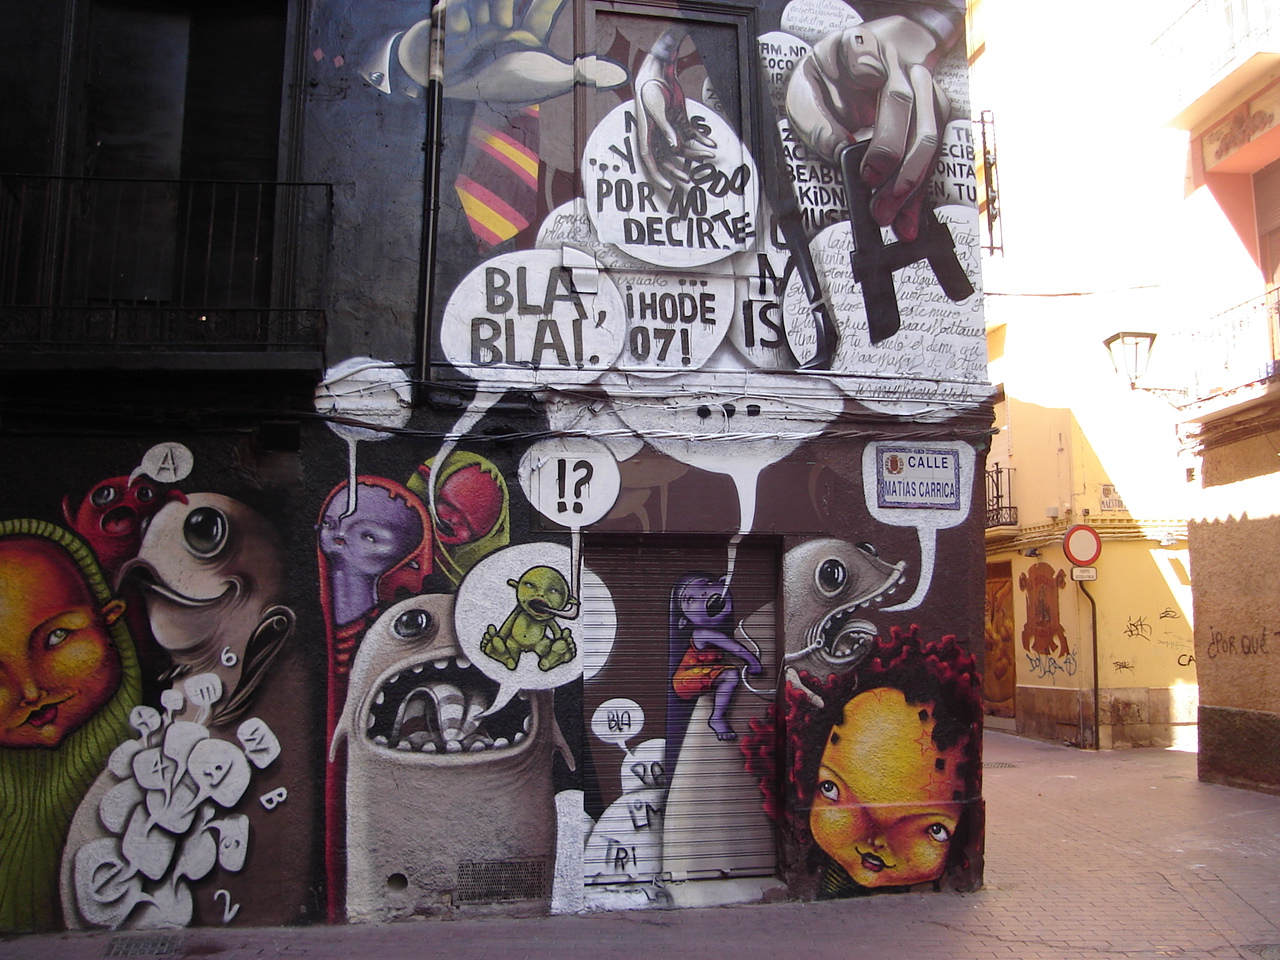 La imagen muestra un mural sobre una pared y una puerta, en el cual hay varios personajes irreales similares a pequeños monstruos, cada uno de los cuales tiene varios bocadillos de texto